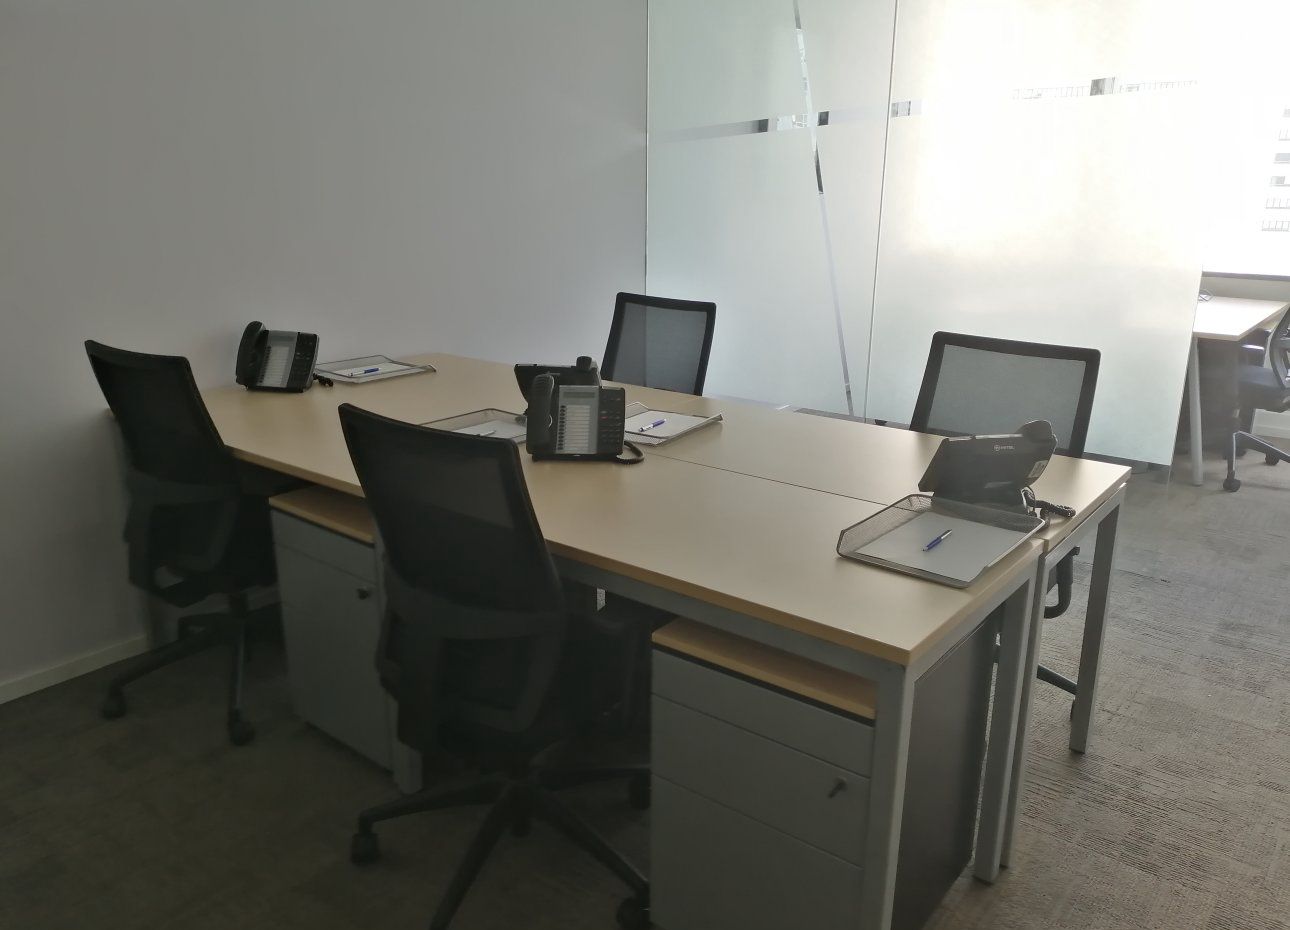 悦达889广场(MEOffice美奥菲思)共享办公室出租-联合办公室-商务中心租赁